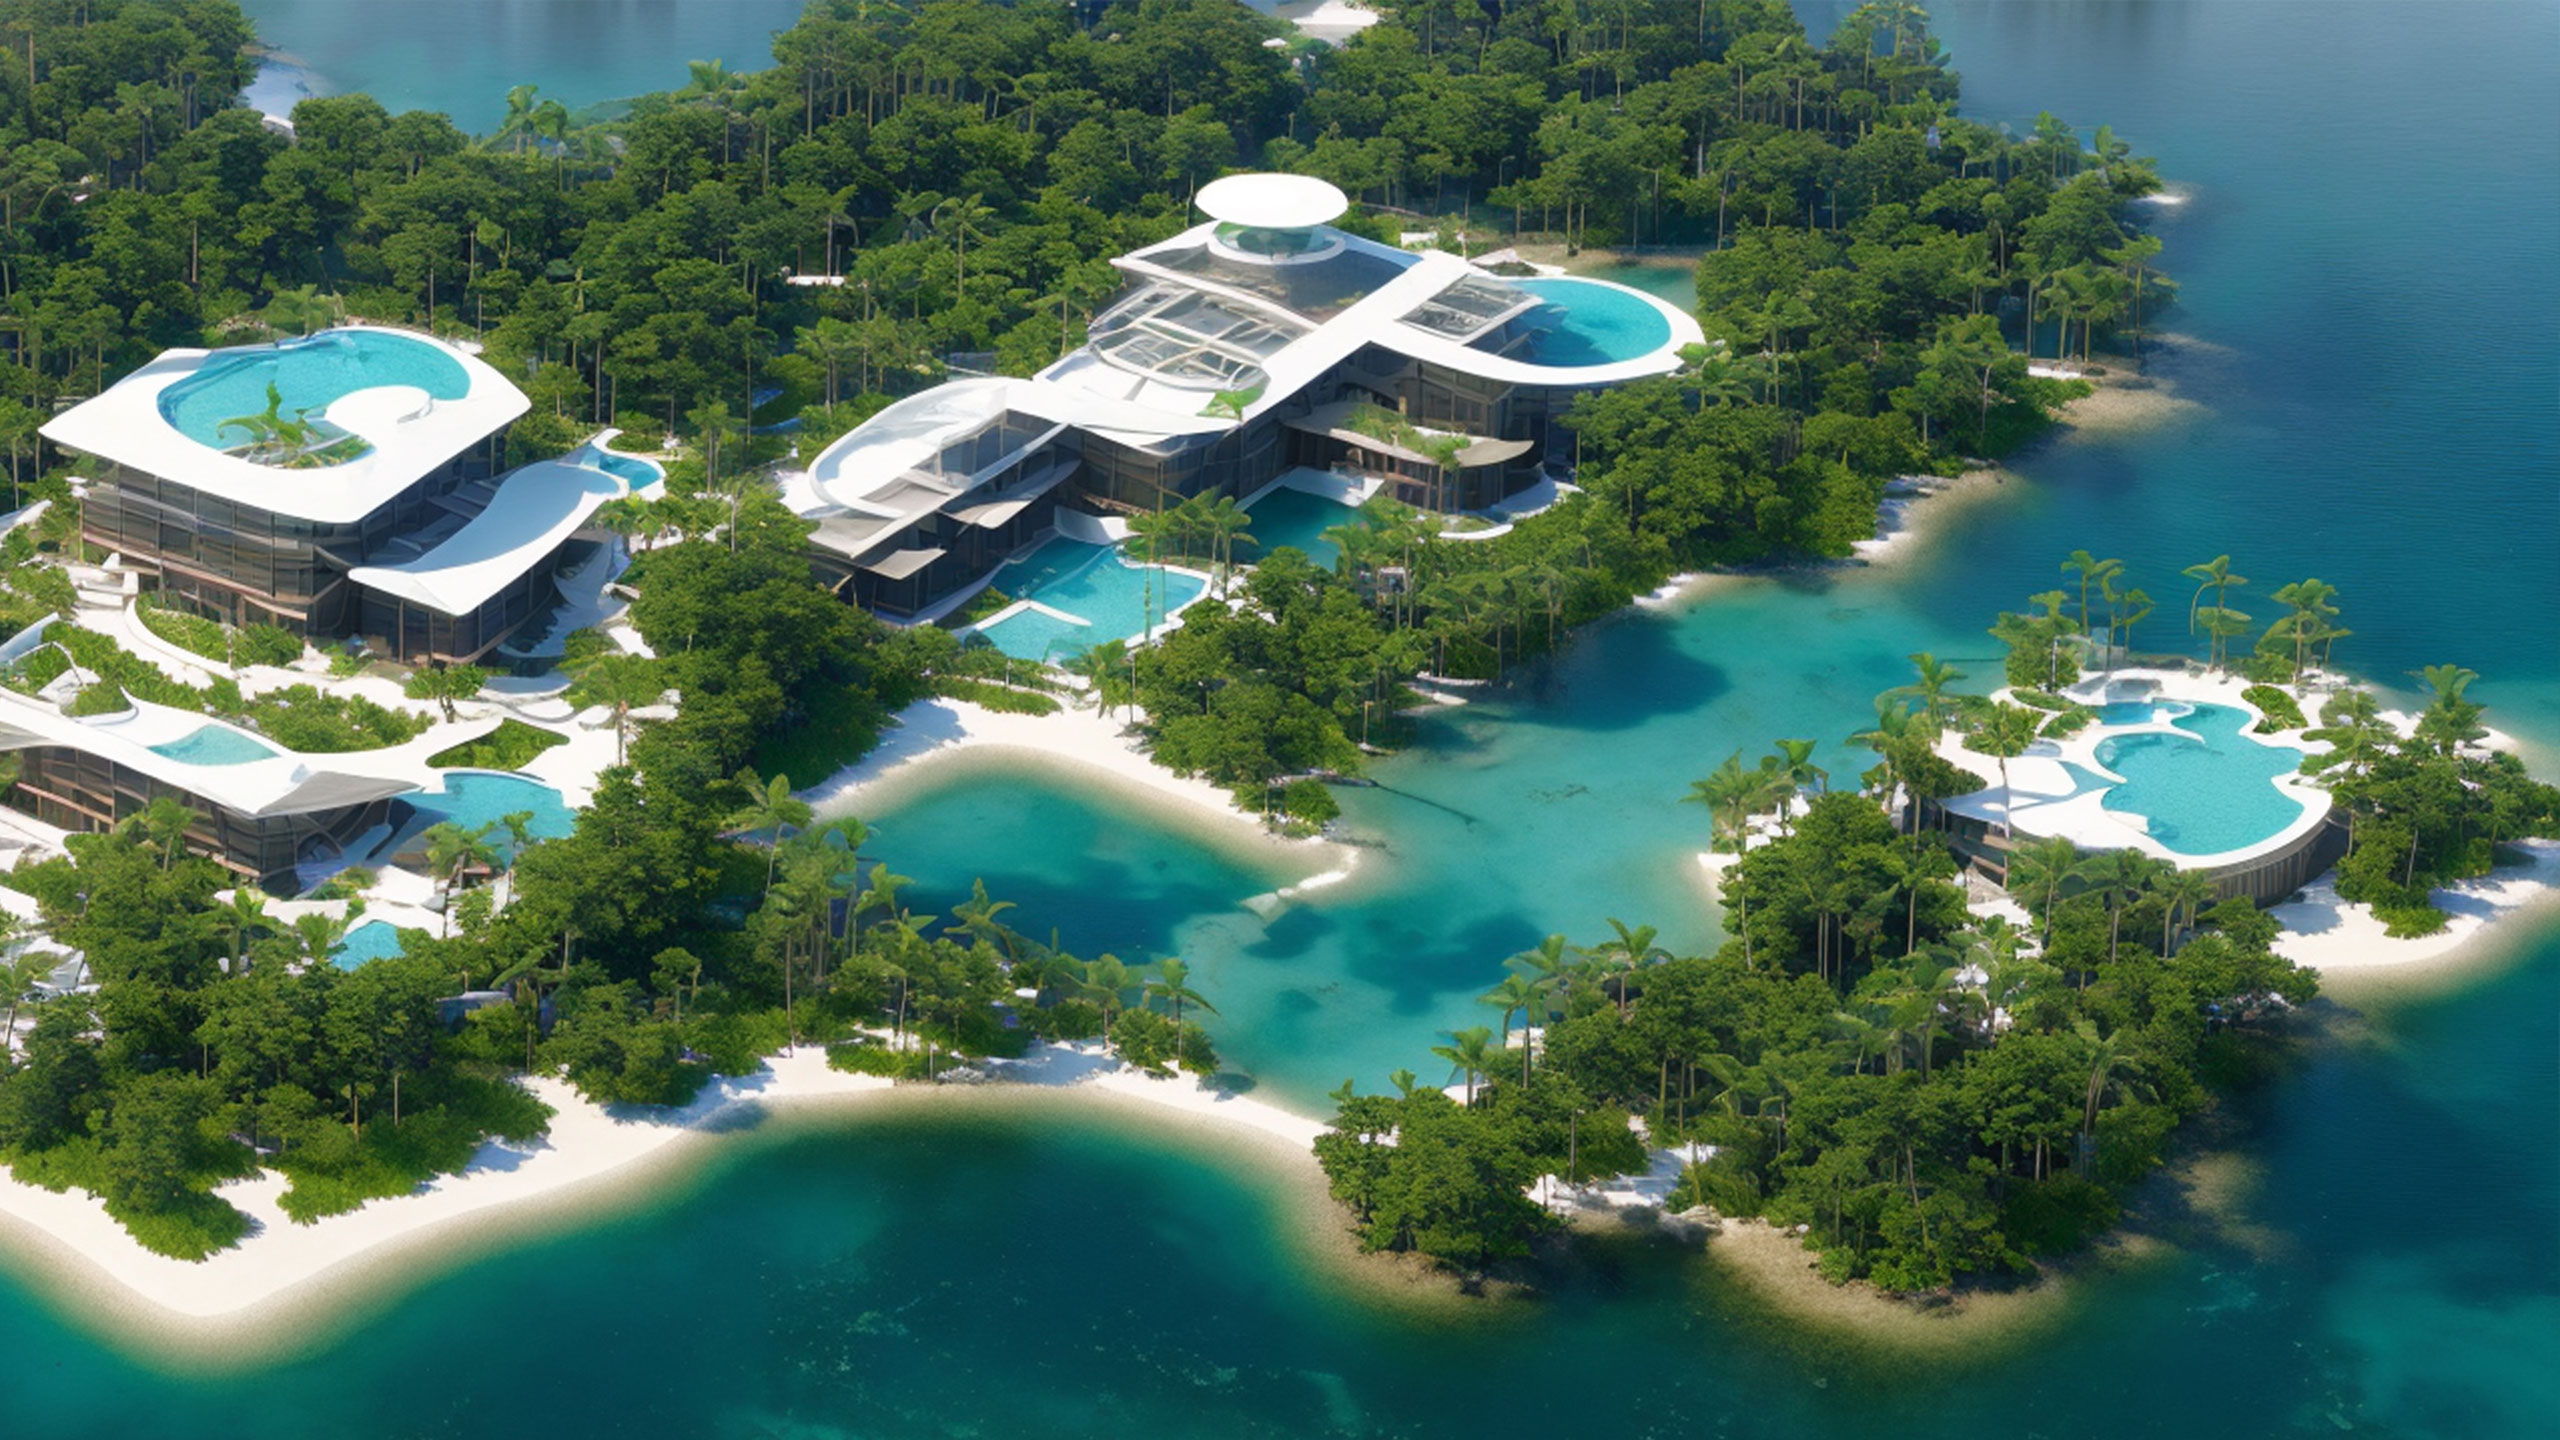 Paradise tourism complex